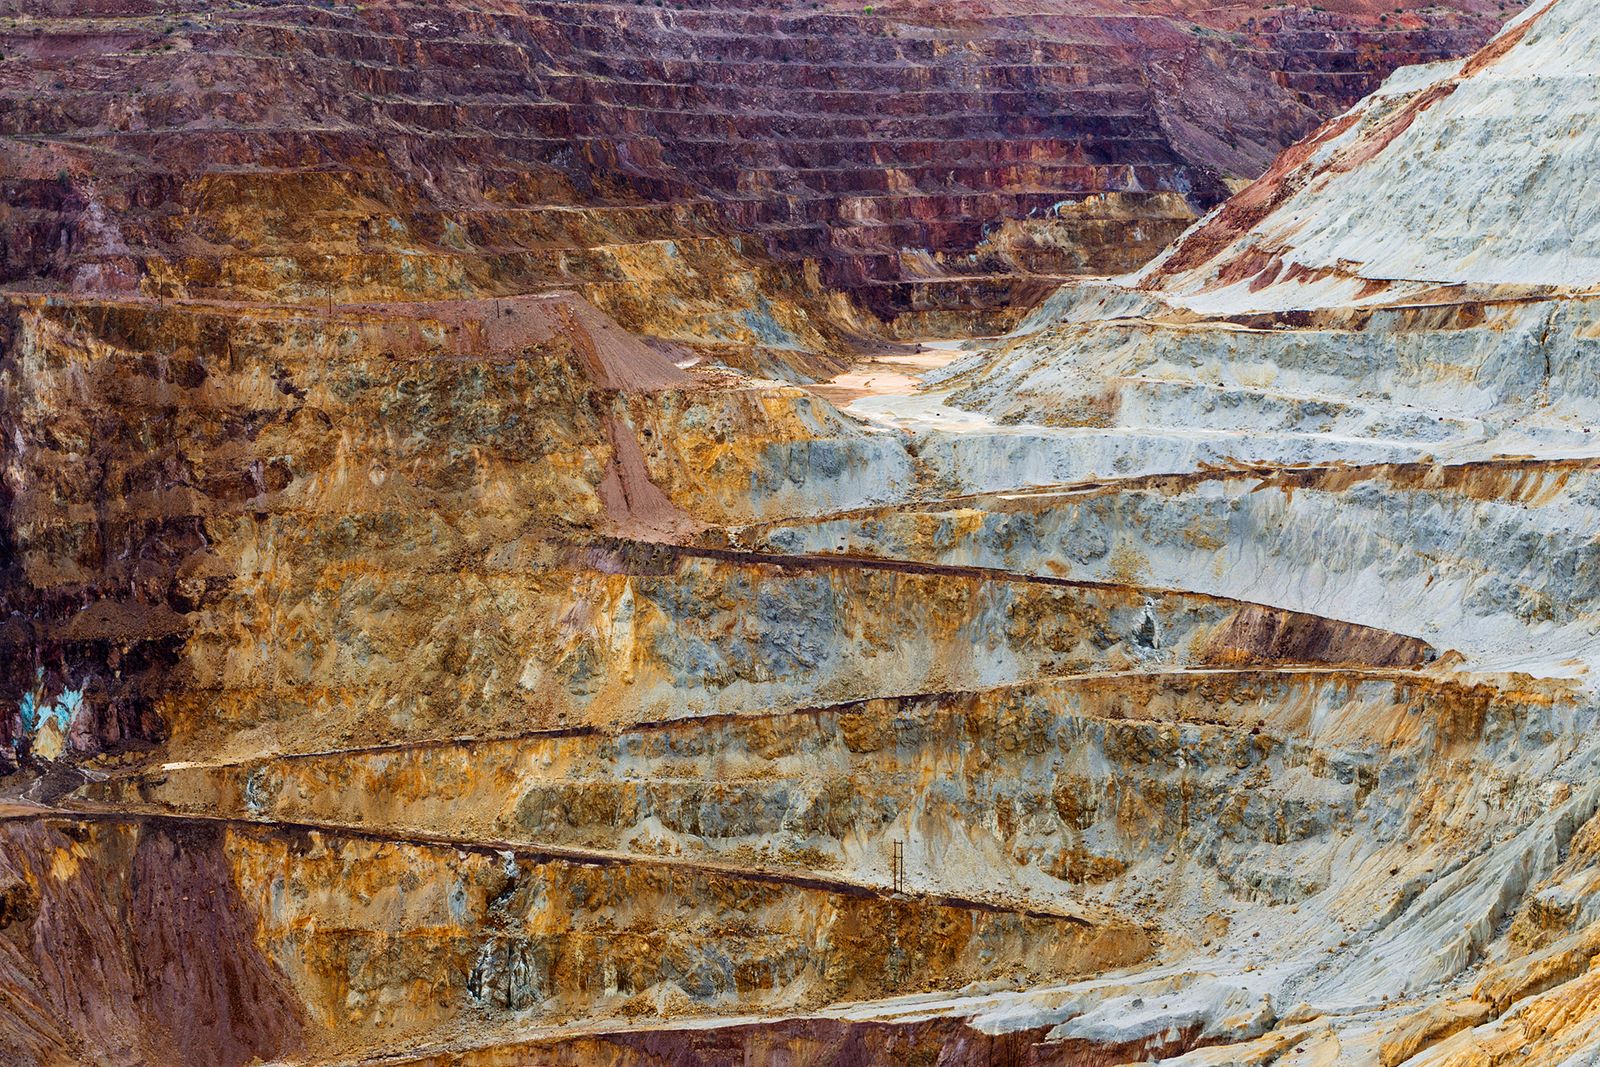 © David Gardner - Lavender Pit Mine, Bisbee AZ. Study #8 (31,25.8500N 109,53.7061W)